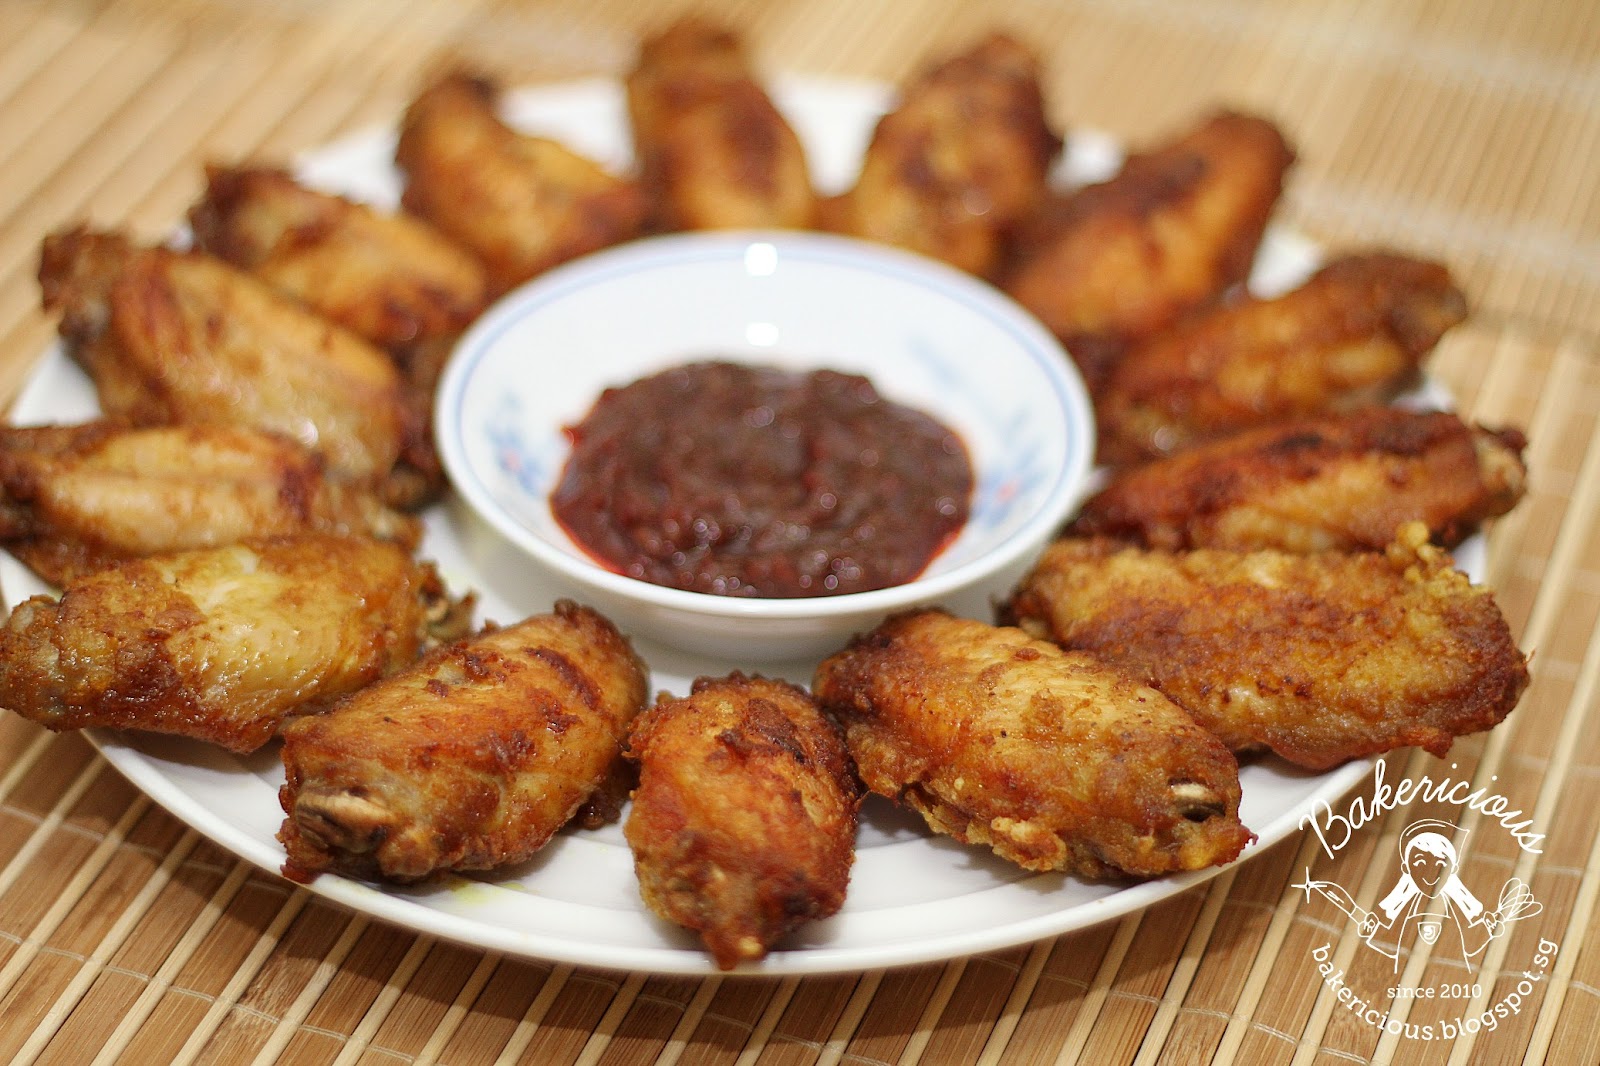 Bakericious: Malaysian Chicken Wing - "Malaysian Monday 82"